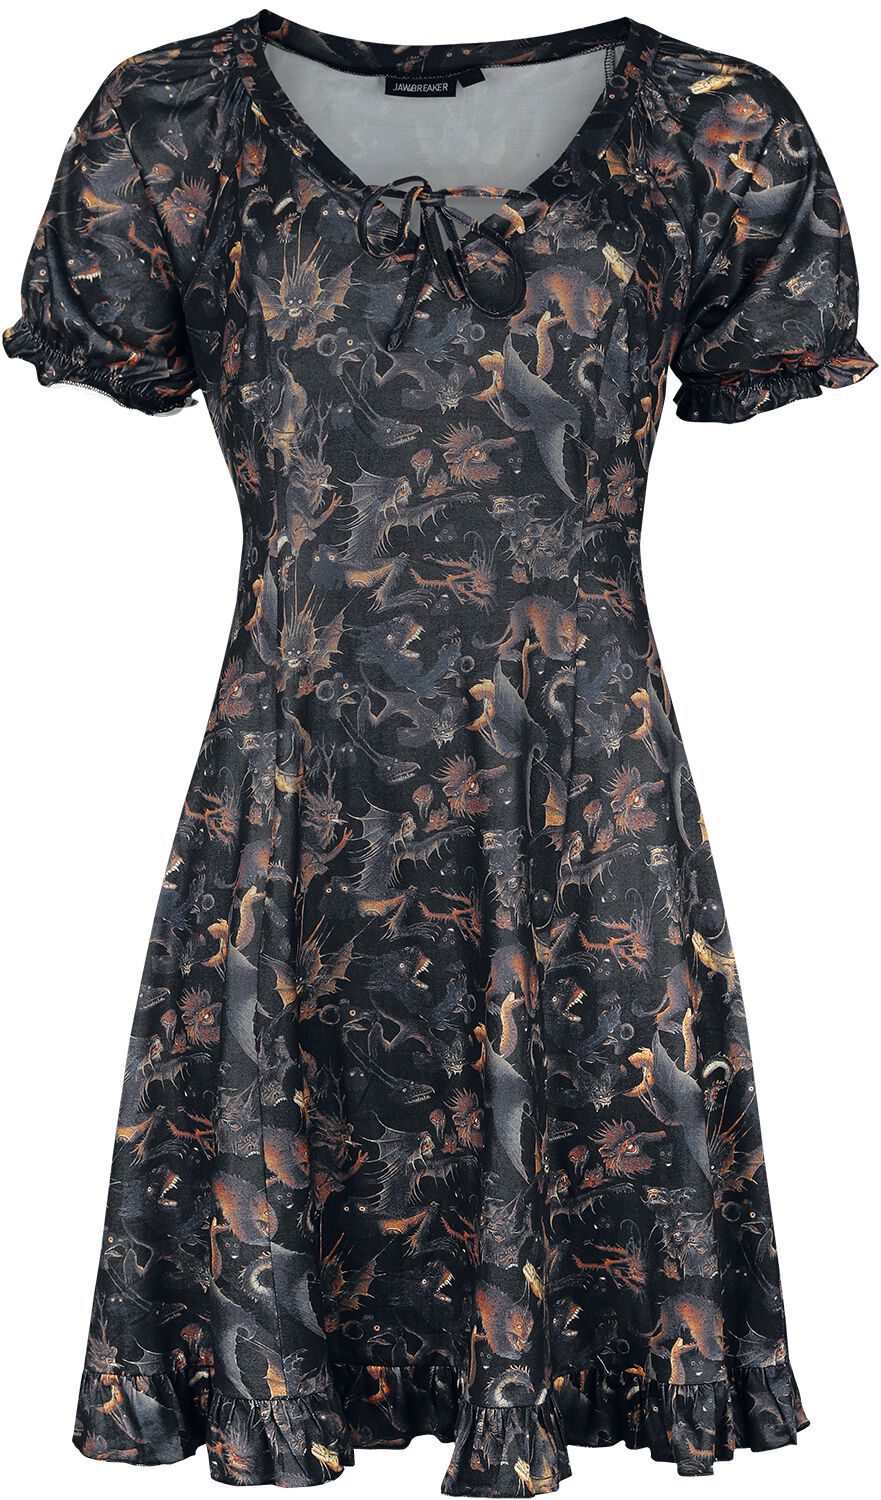 Jawbreaker - Gothic Kurzes Kleid - Paradise Lost Dress - XS bis 4XL - für Damen - Größe 3XL - multicolor